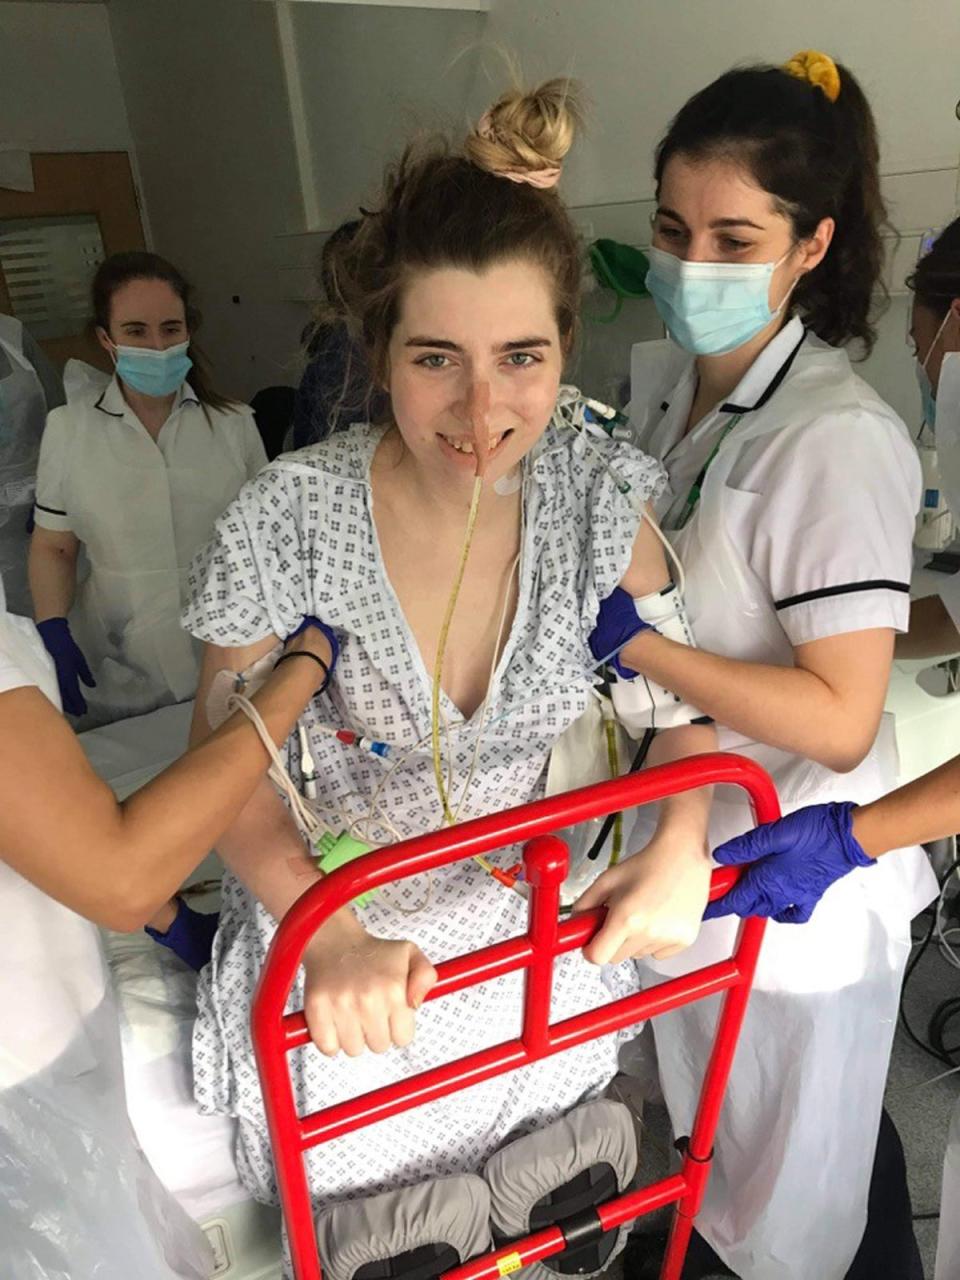 Sophie Anderson, de 24 años, aprendiendo como pararse otra vez con la ayuda de los enfermeros (Collect/PA Real Life)